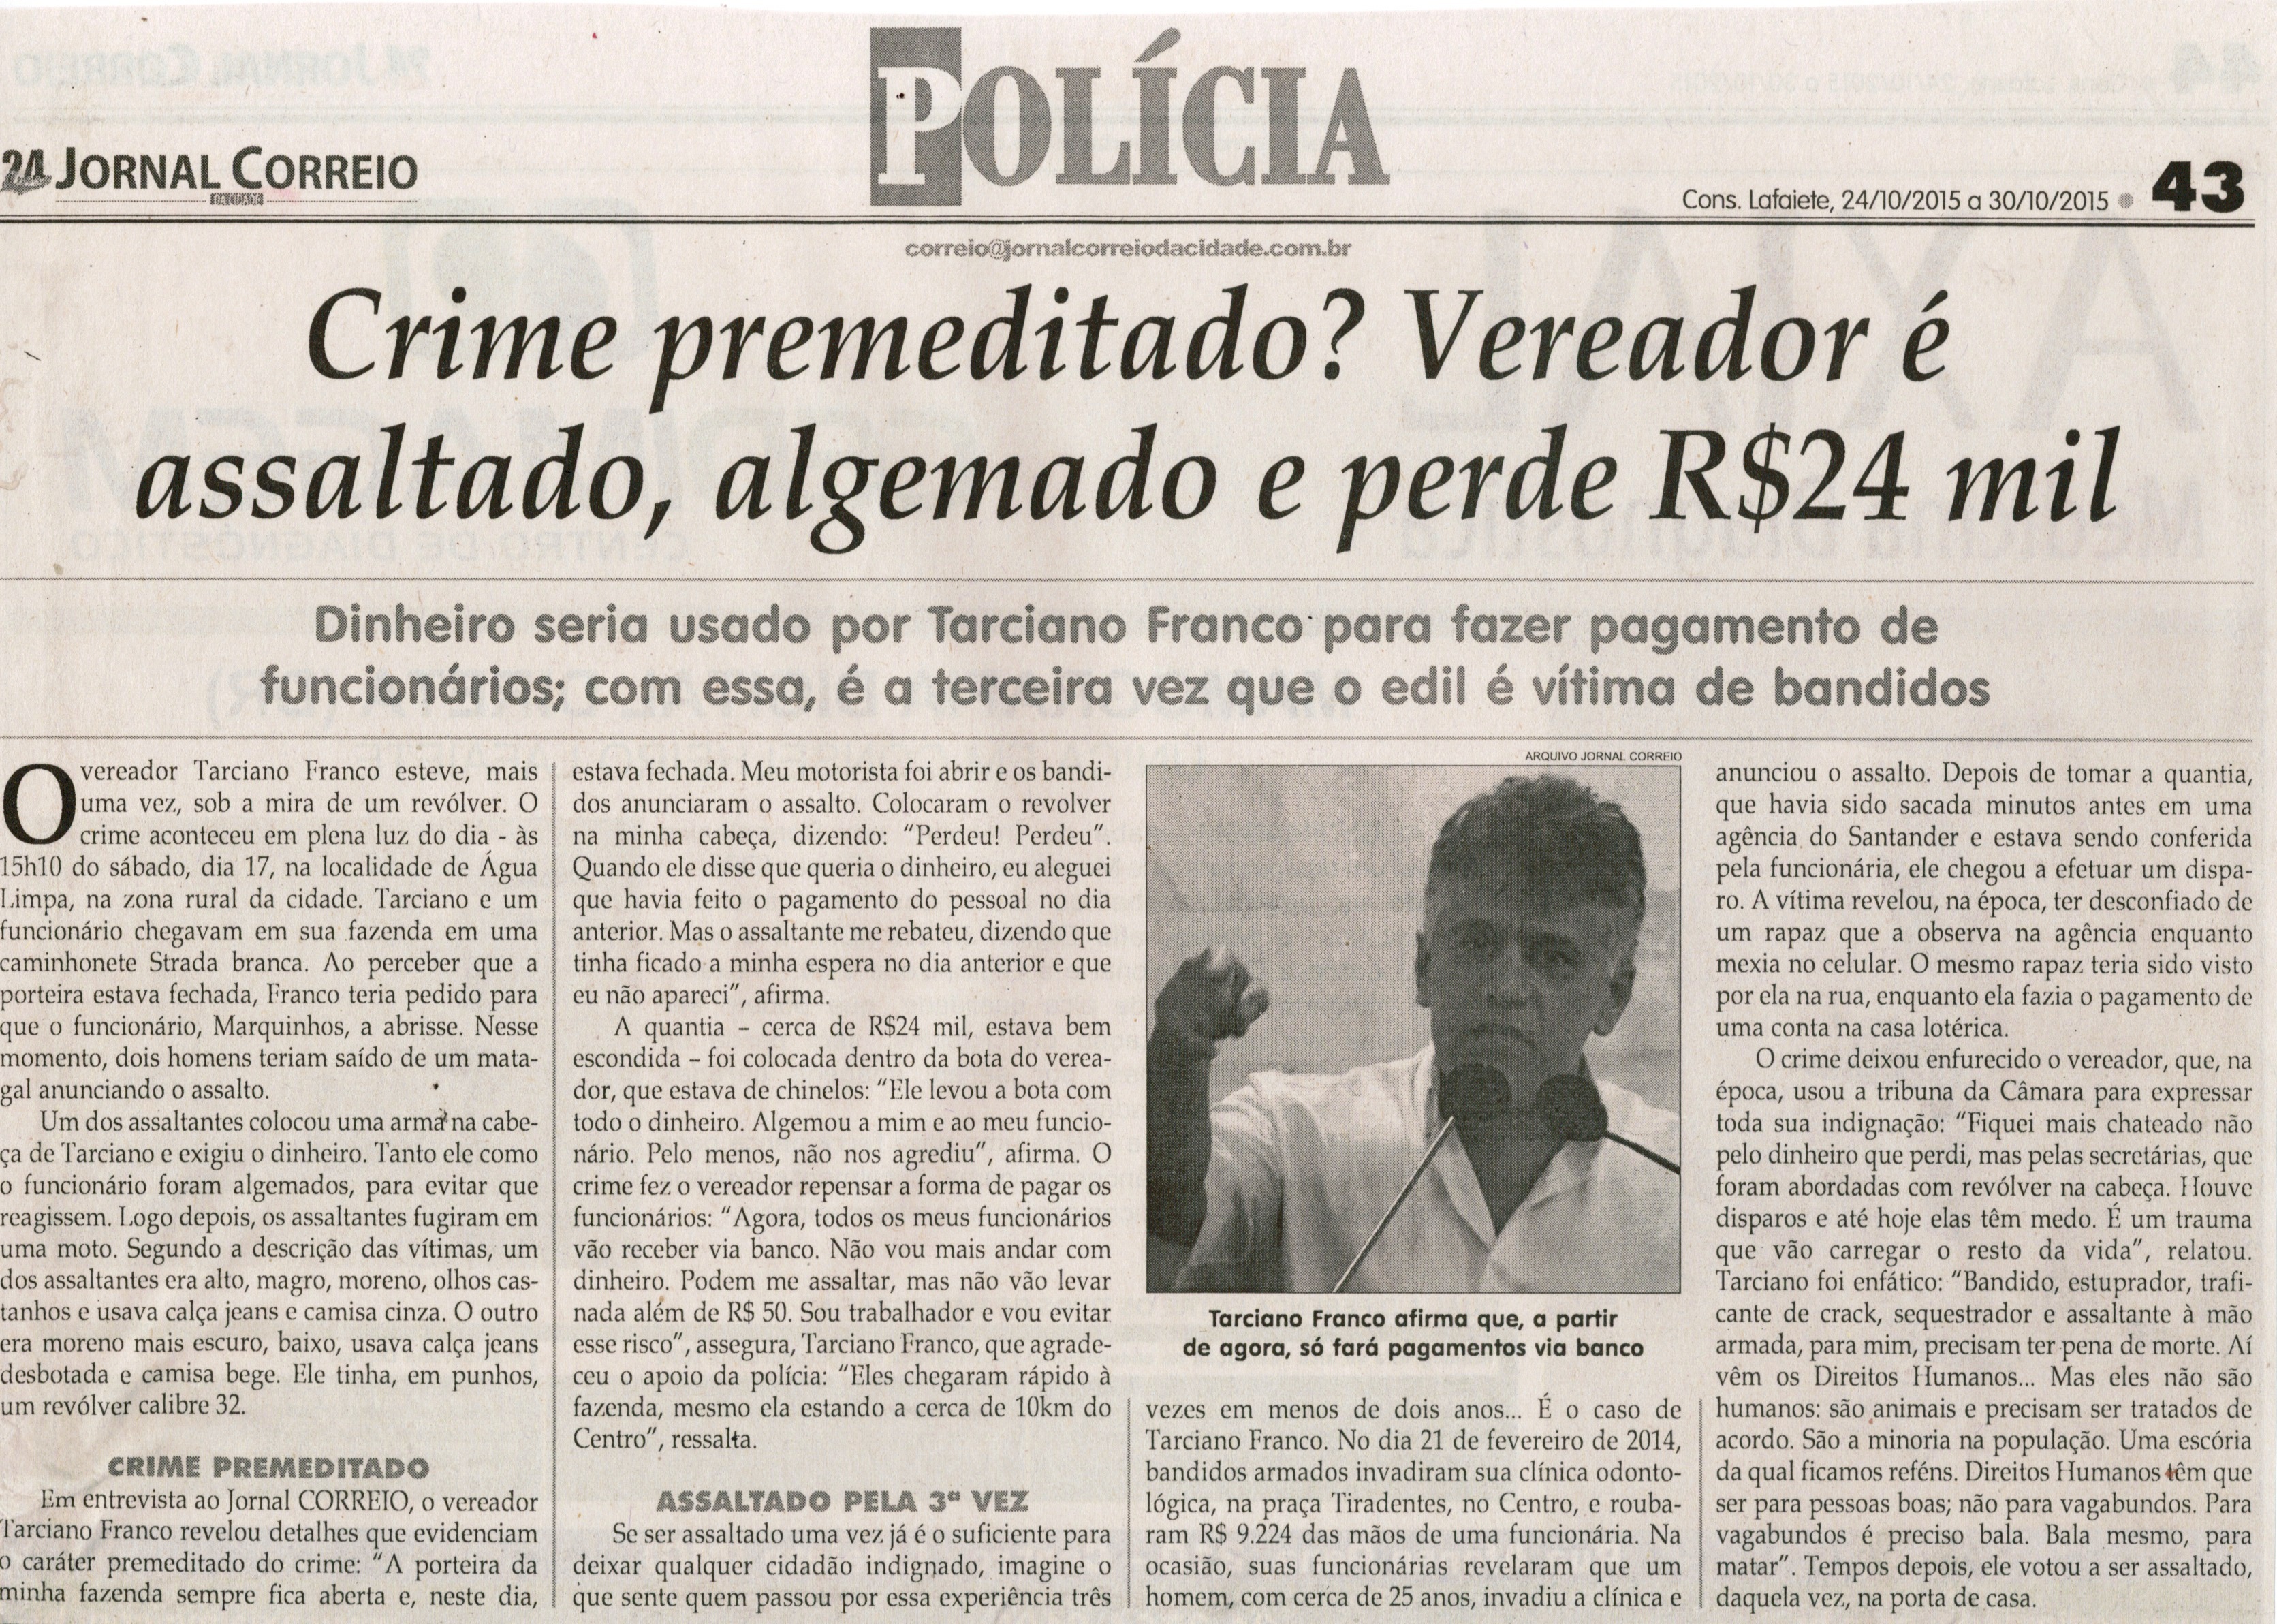 Crime premeditado? Vereador é assaltado, algemado e perde R$24 mil. Jornal Correio da Cidade, Conselheiro Lafaiete, 1288ª ed. 24 out. 2015, Polícia, p. 43.